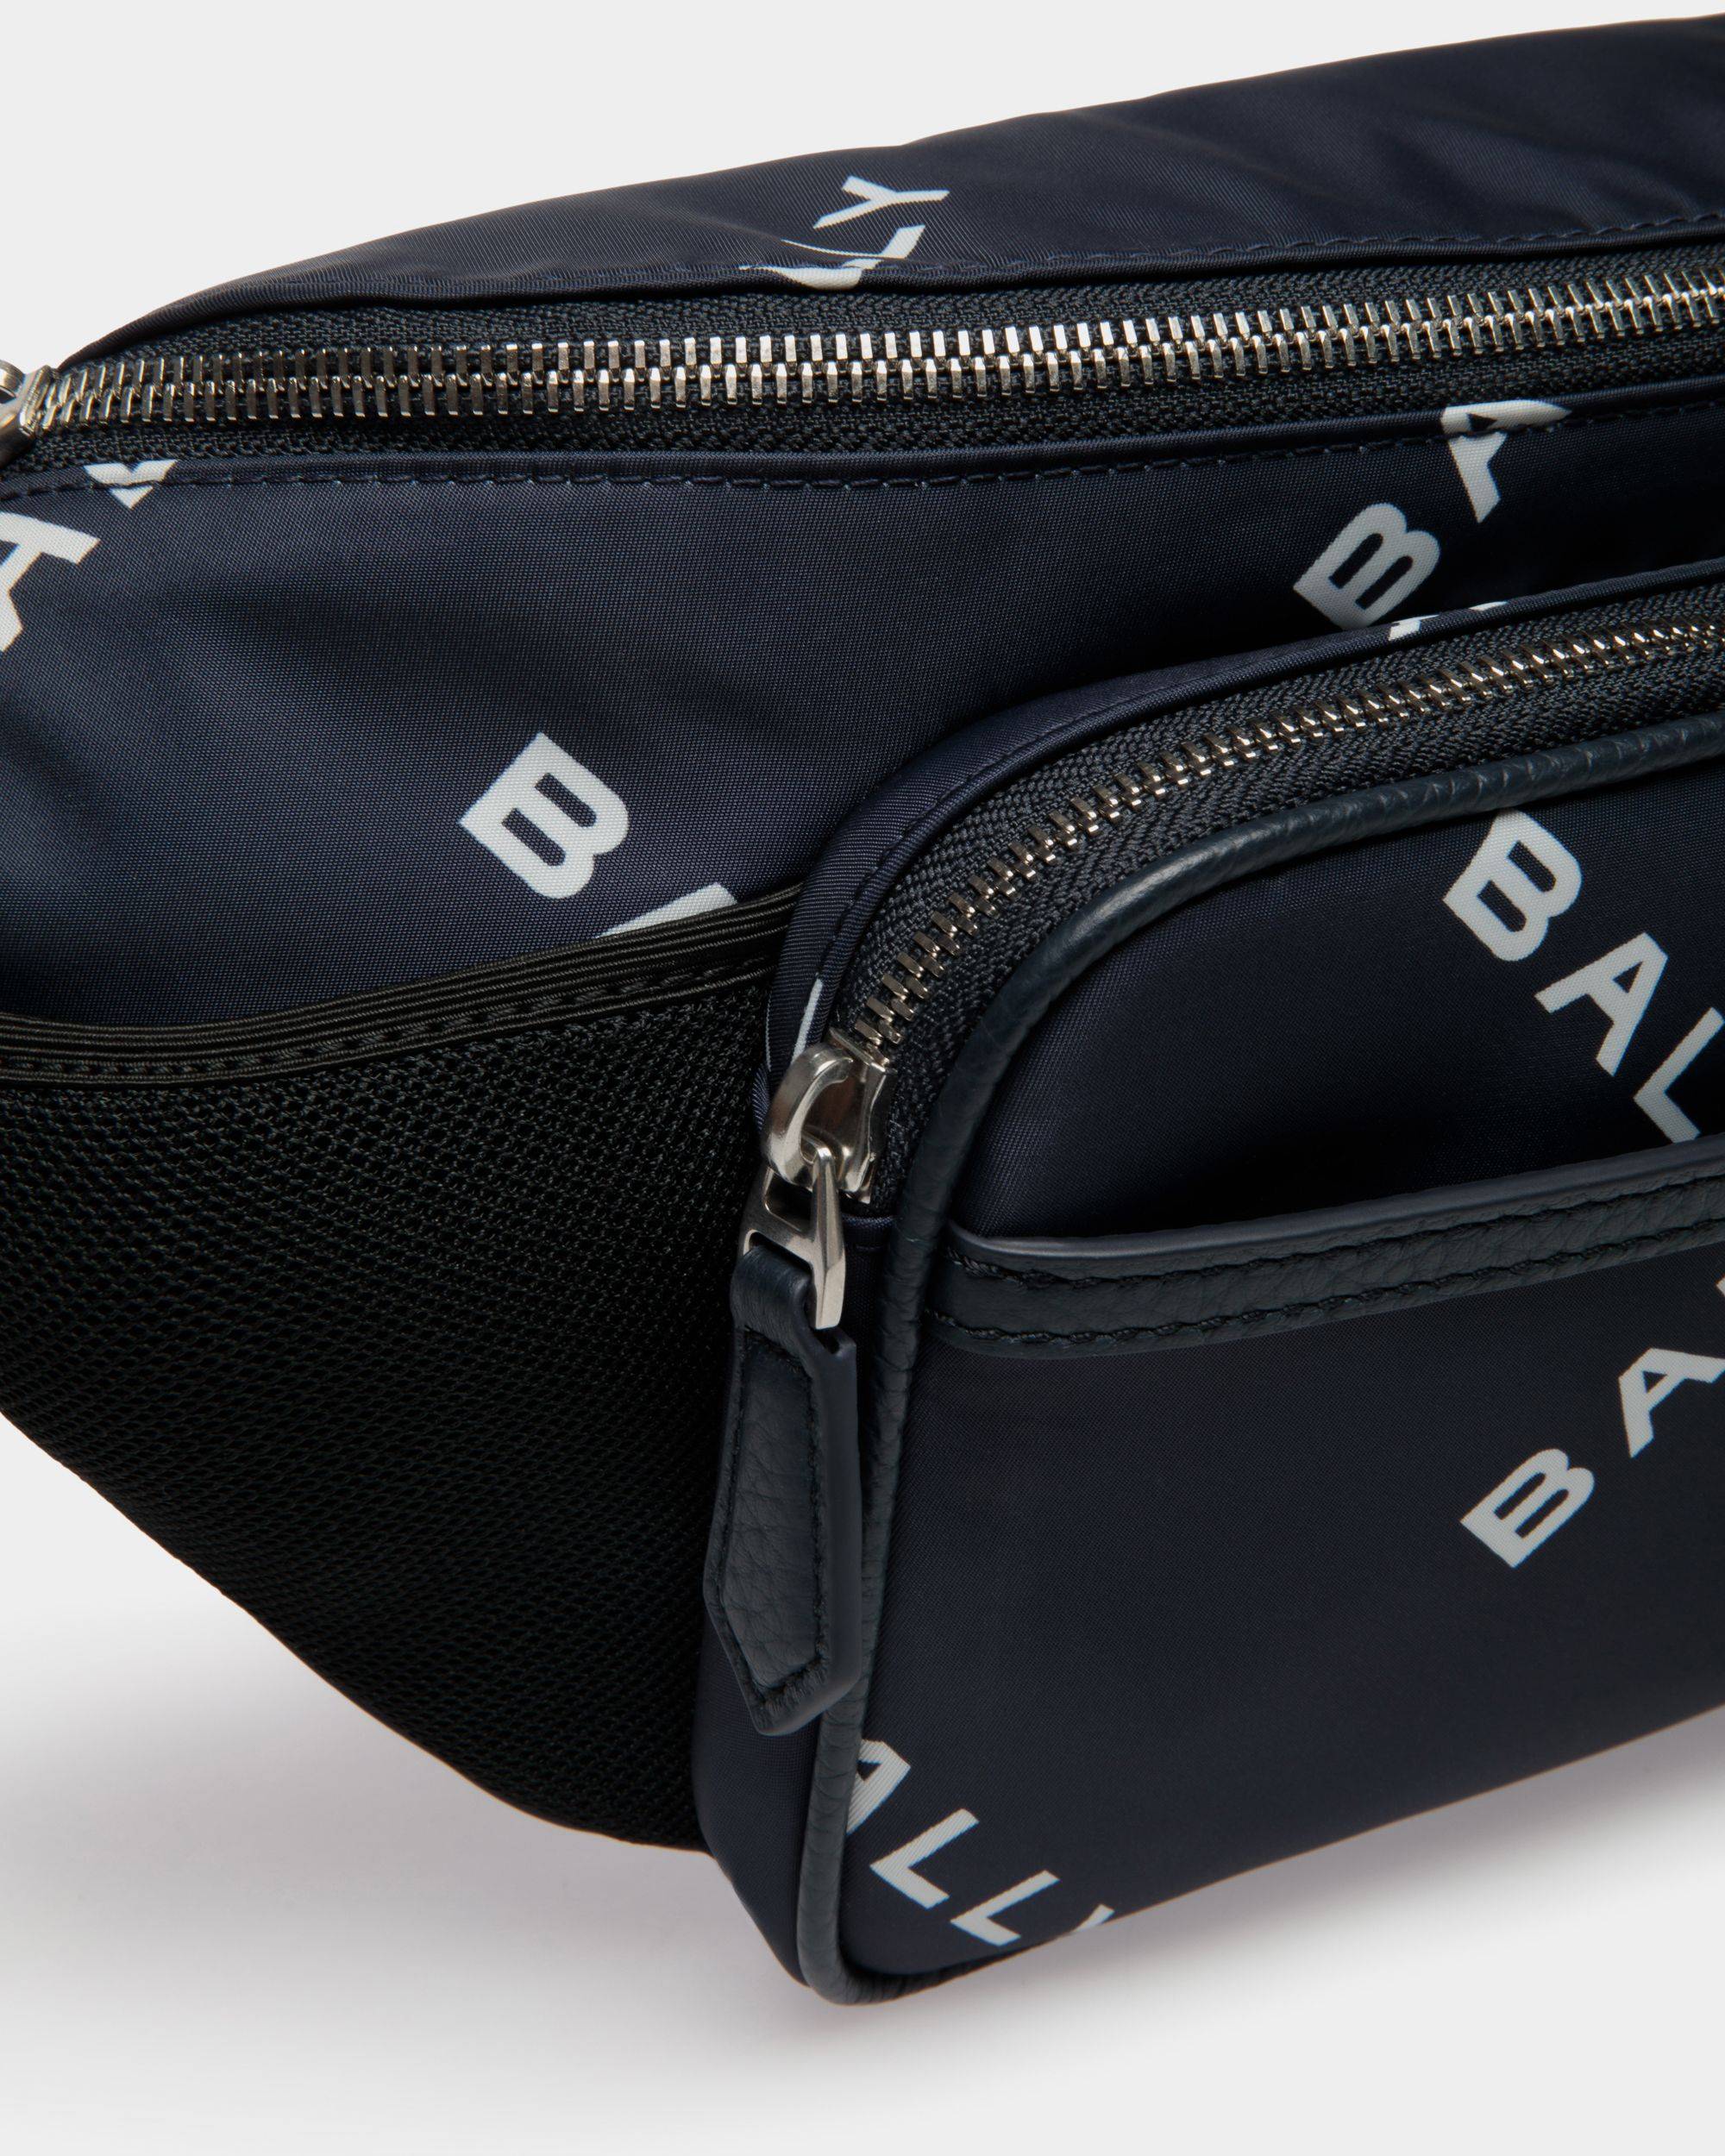 Code | Men's Belt Bag in Blue Printed Nylon | Bally | Still Life Detail